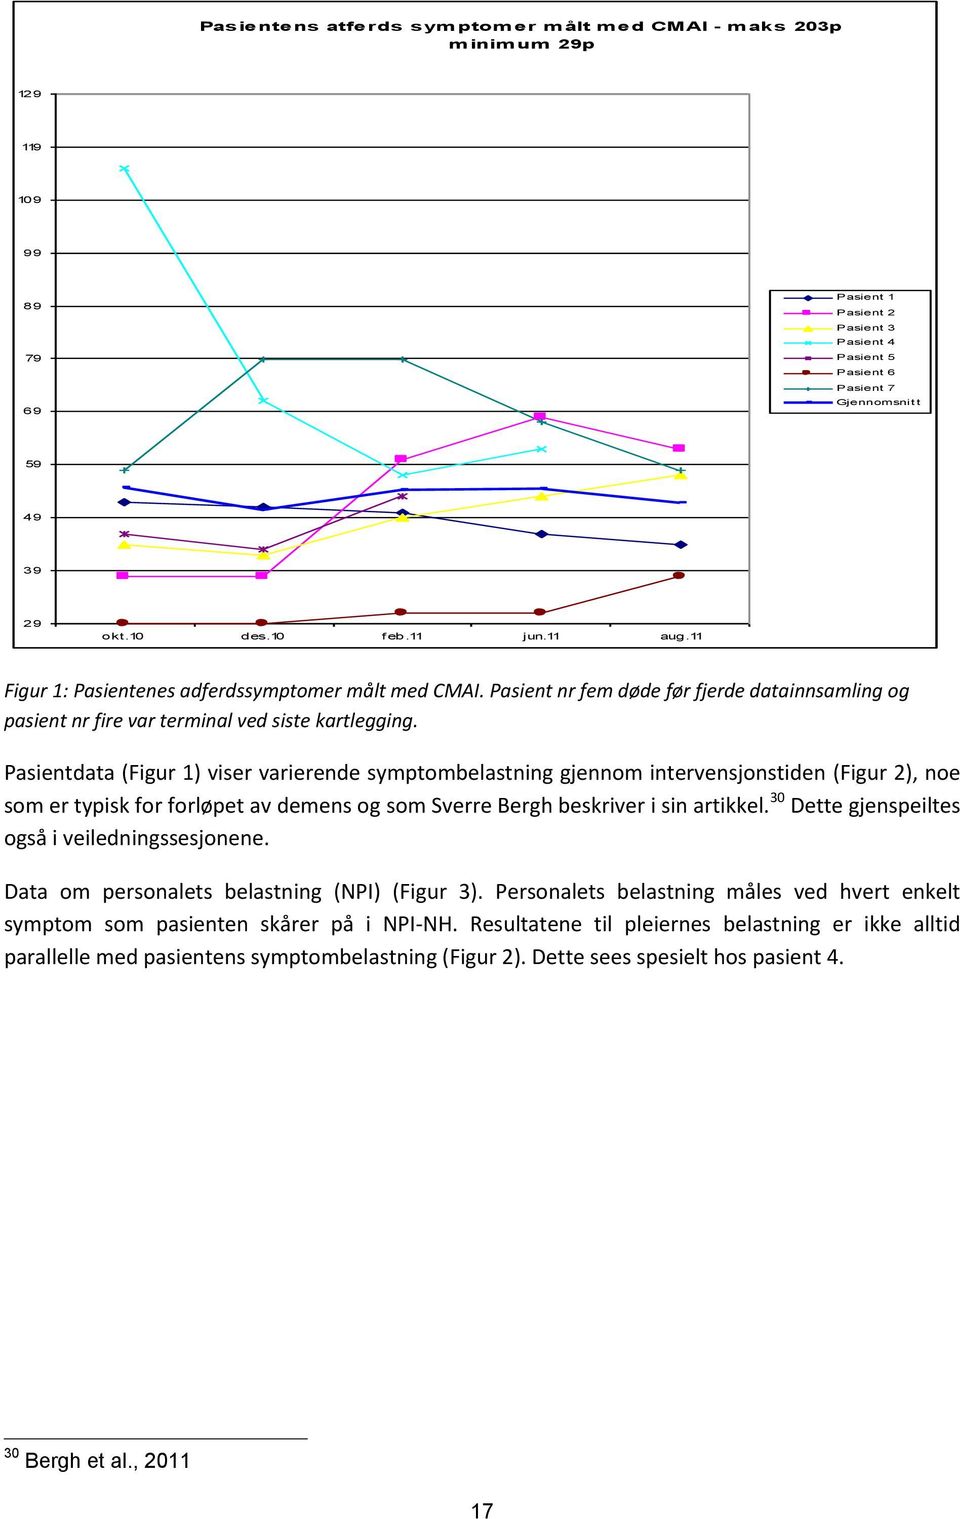 Pasientdata (Figur 1) viser varierende symptombelastning gjennom intervensjonstiden (Figur 2), noe som er typisk for forløpet av demens og som Sverre Bergh beskriver i sin artikkel.